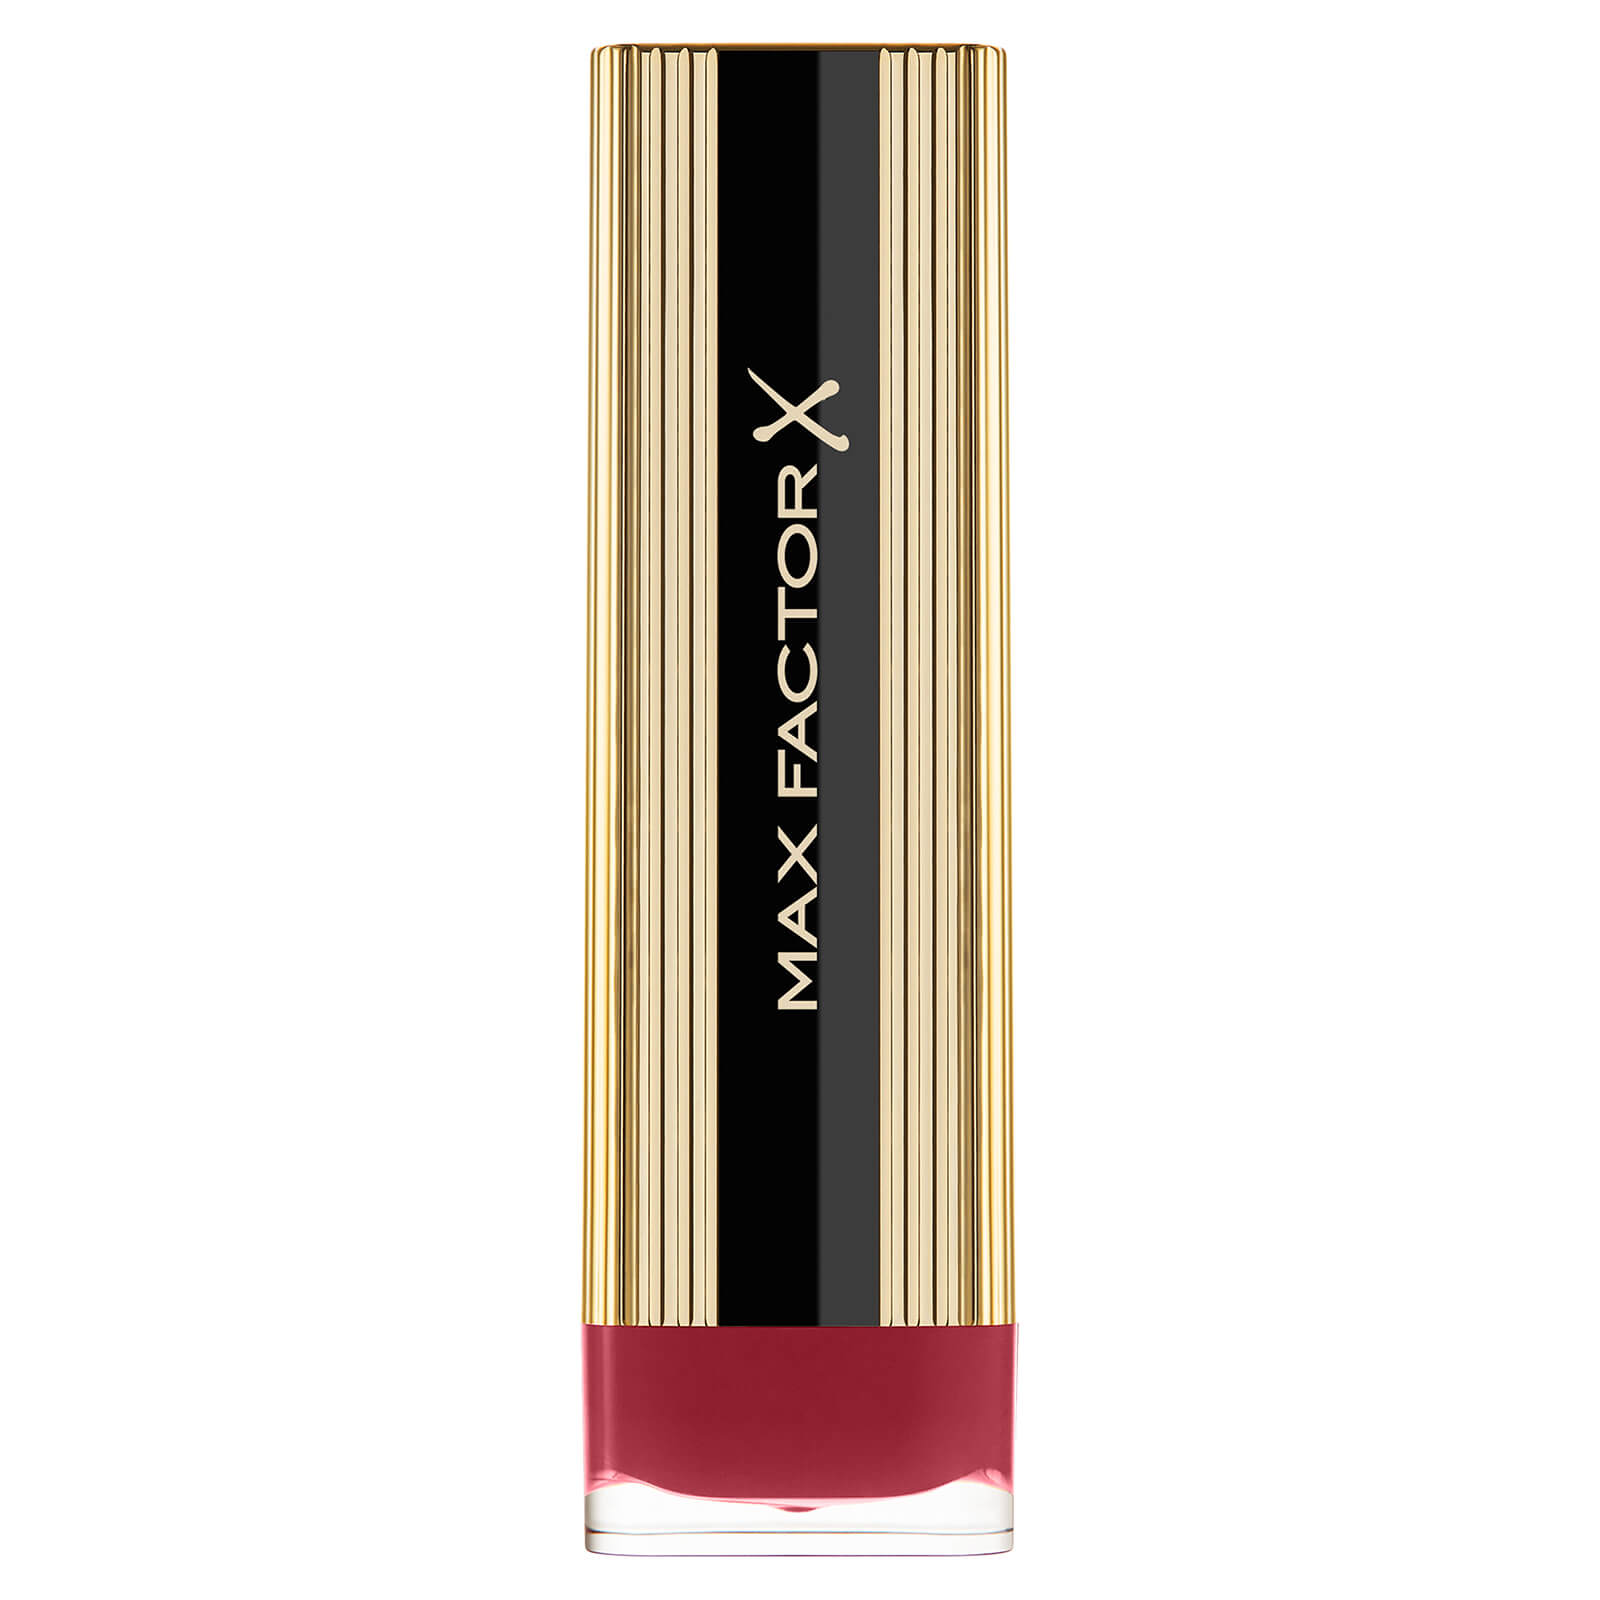 Max Factor Colour Elixir Lipstick with Vitamin E 4g (Various Shades) - 025 Sunbronze